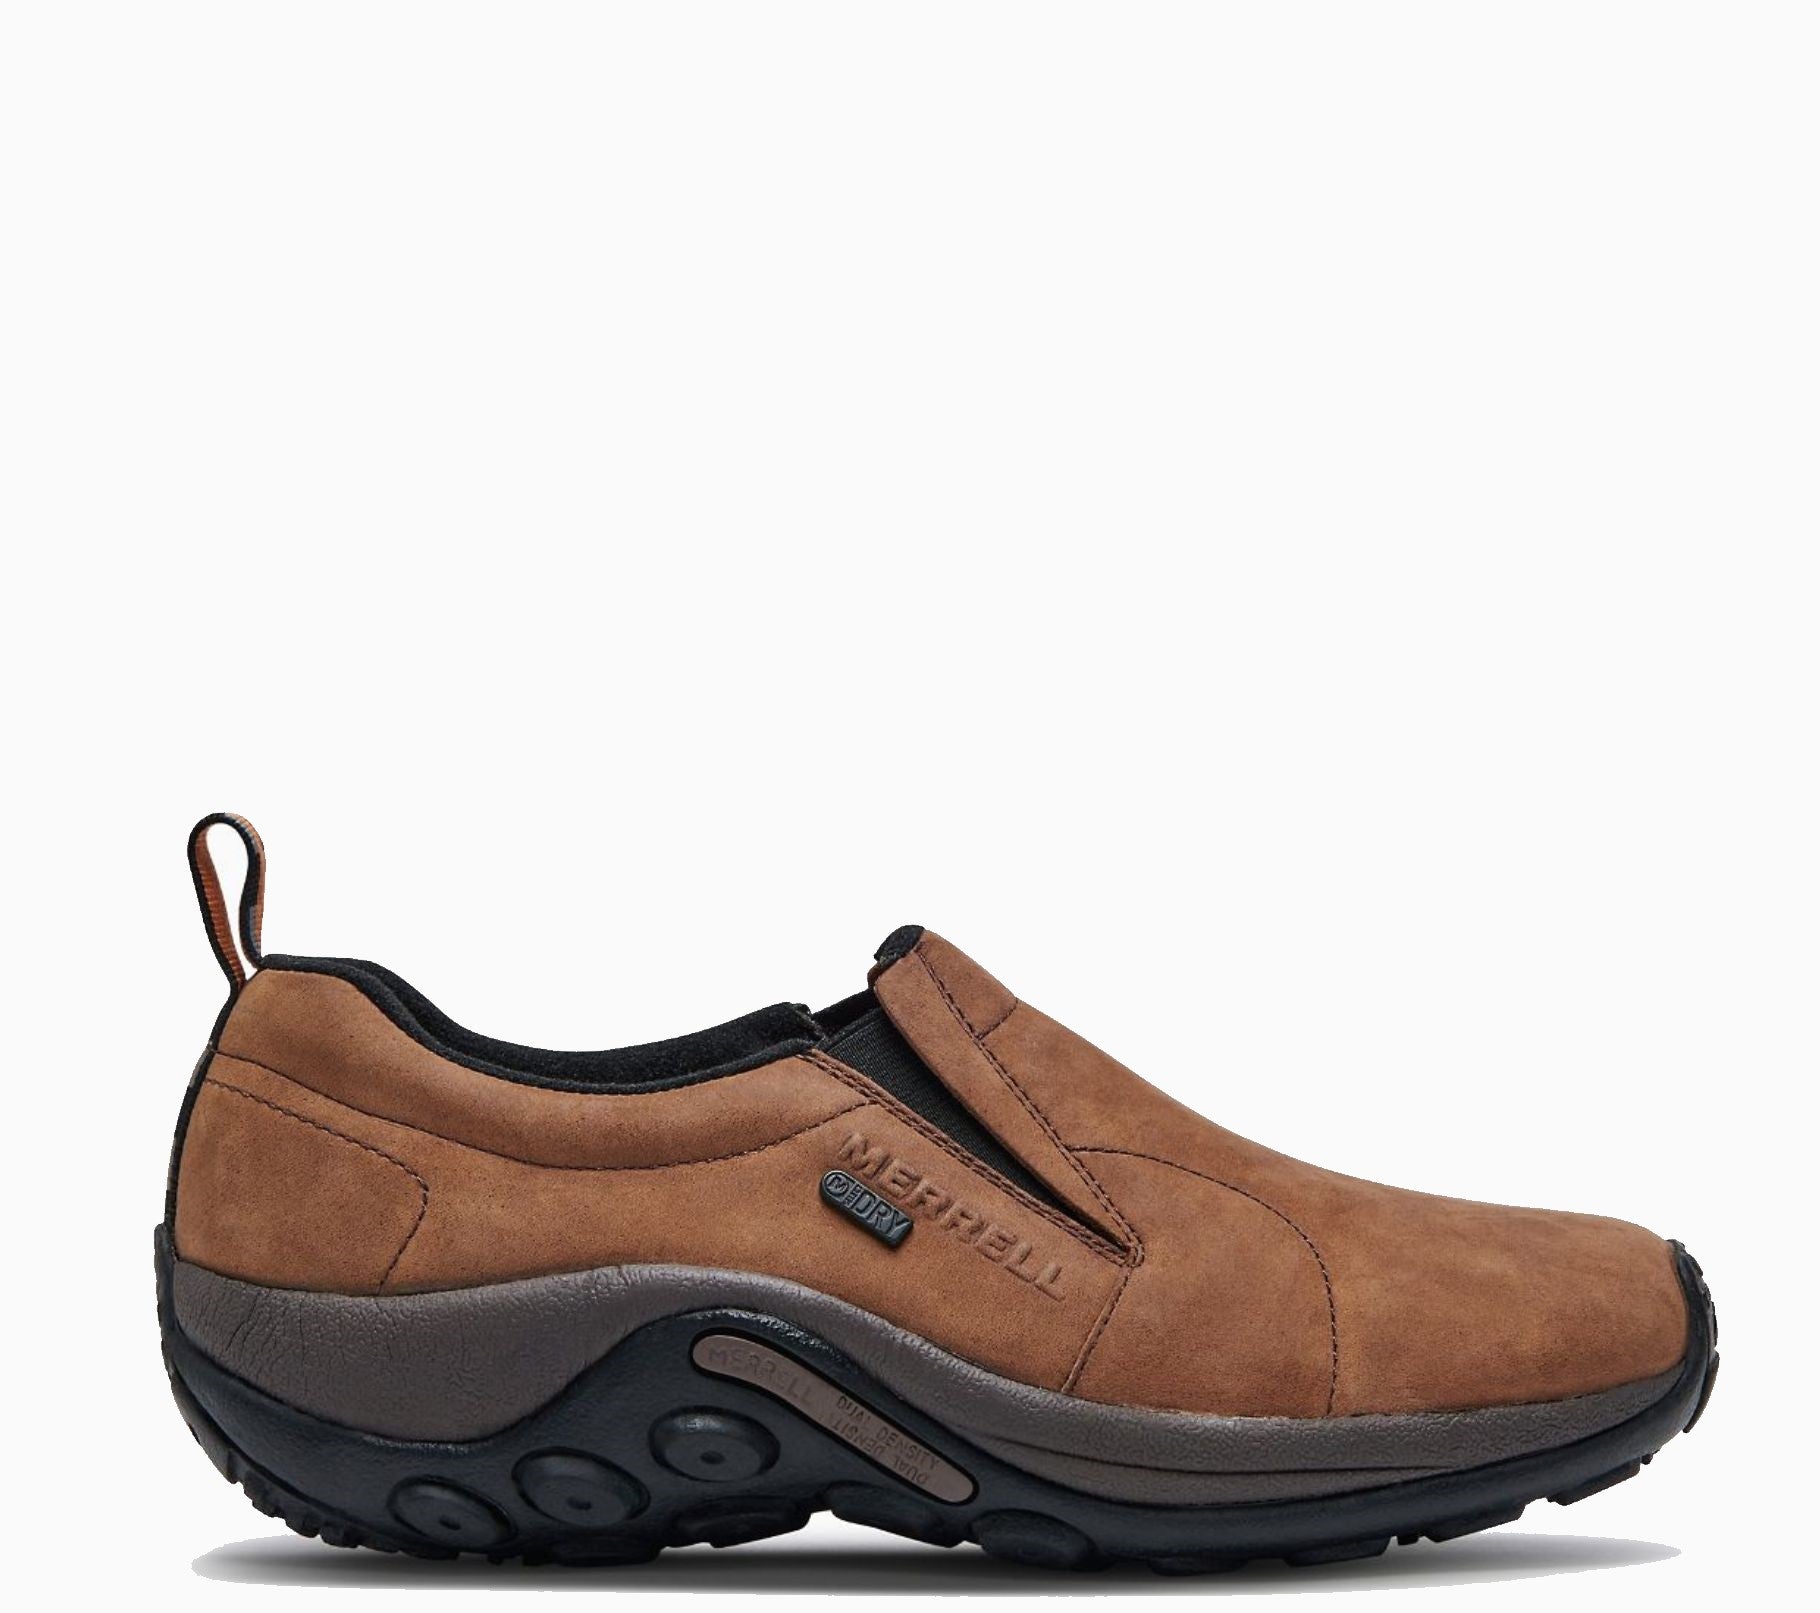 Merrell Men's Jungle Moc Nubuck Waterproof Slip-On Shoe - Work World - Workwear, Work Boots, Safety Gear